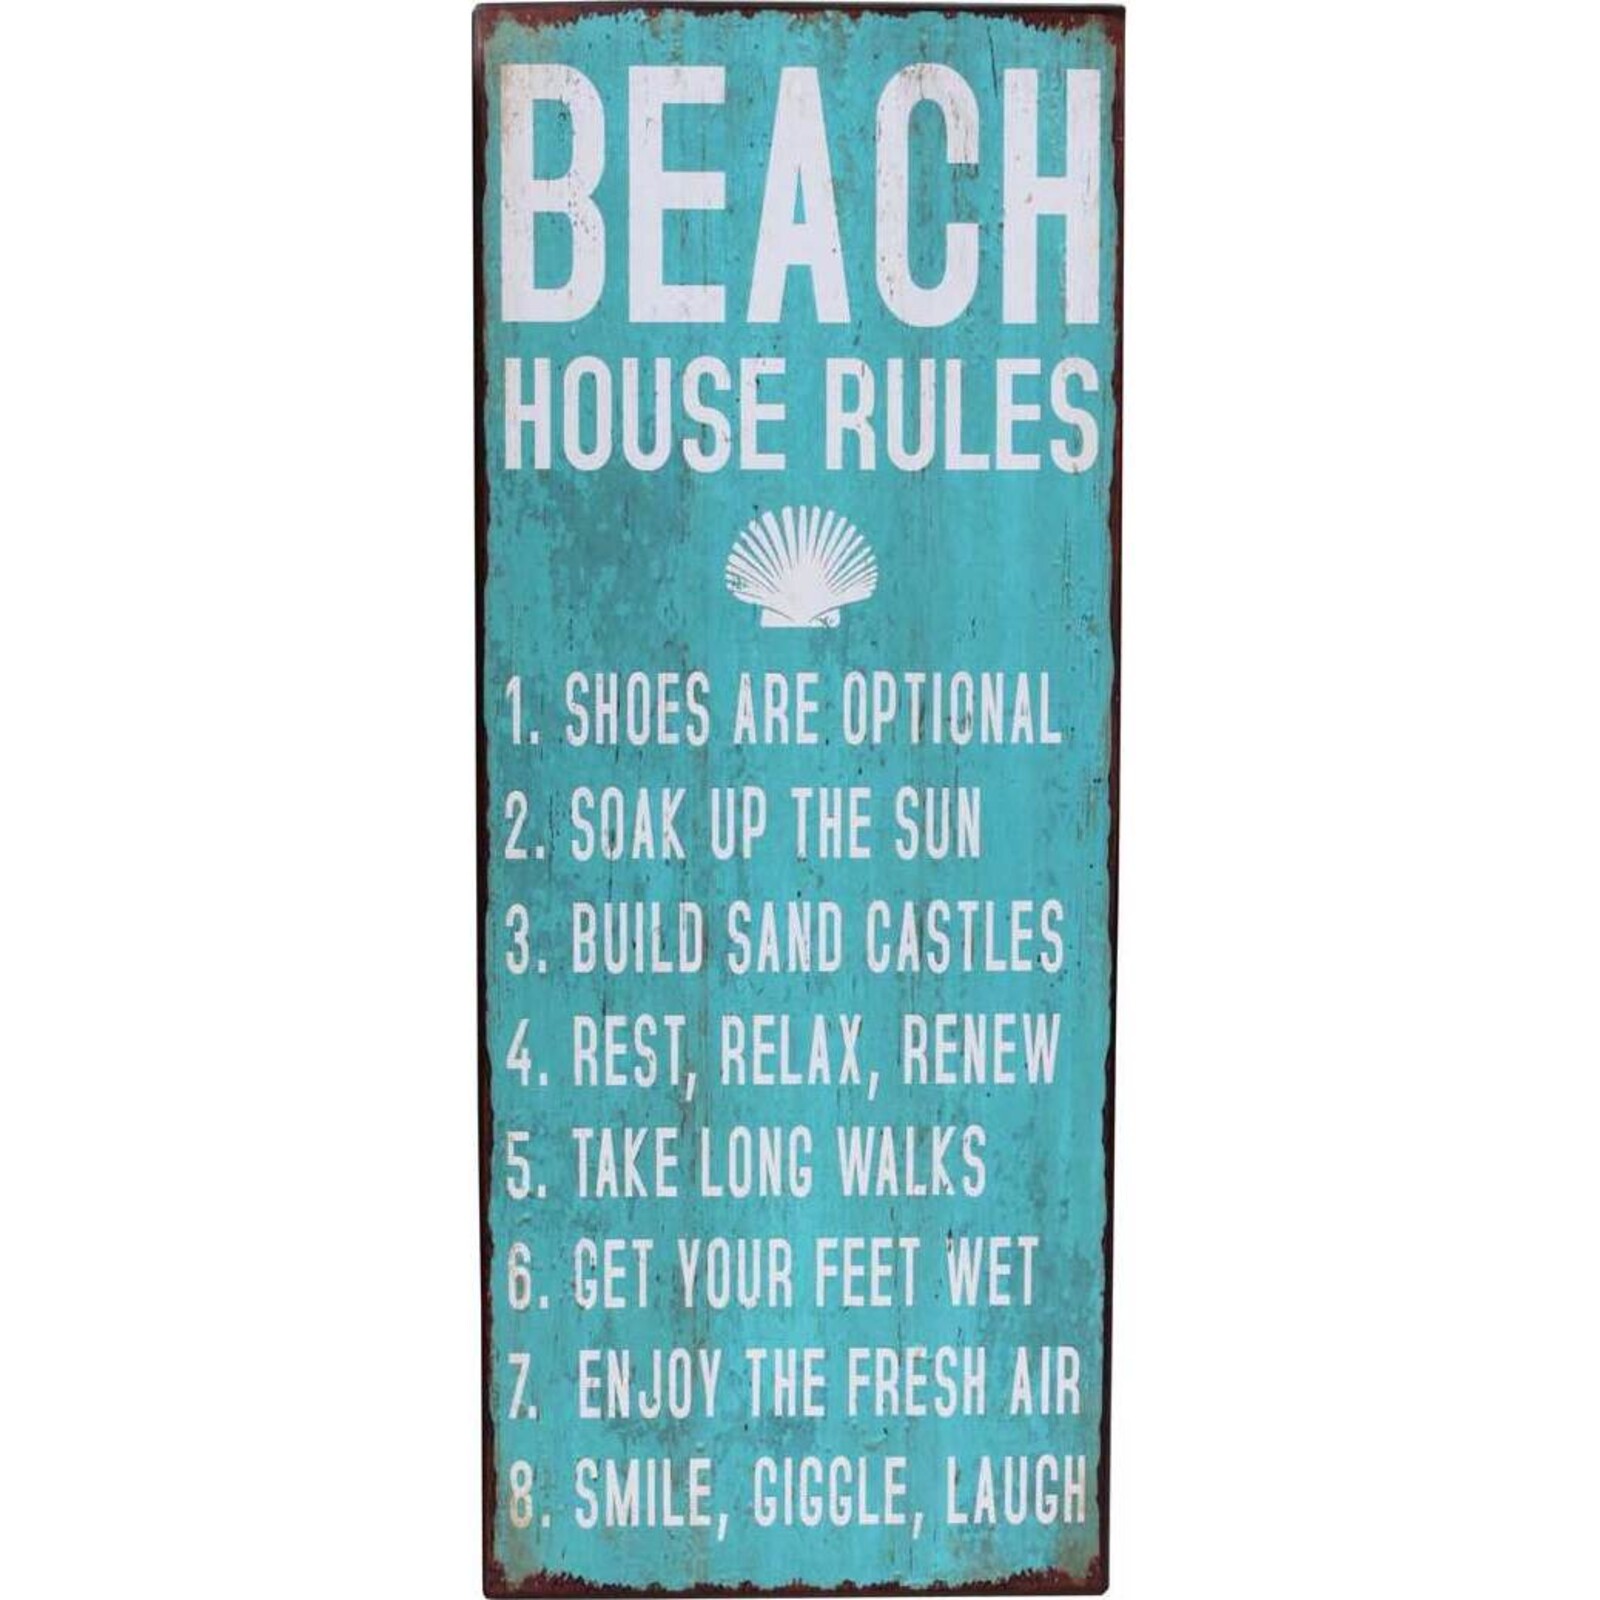 Sign - Beach House Rules